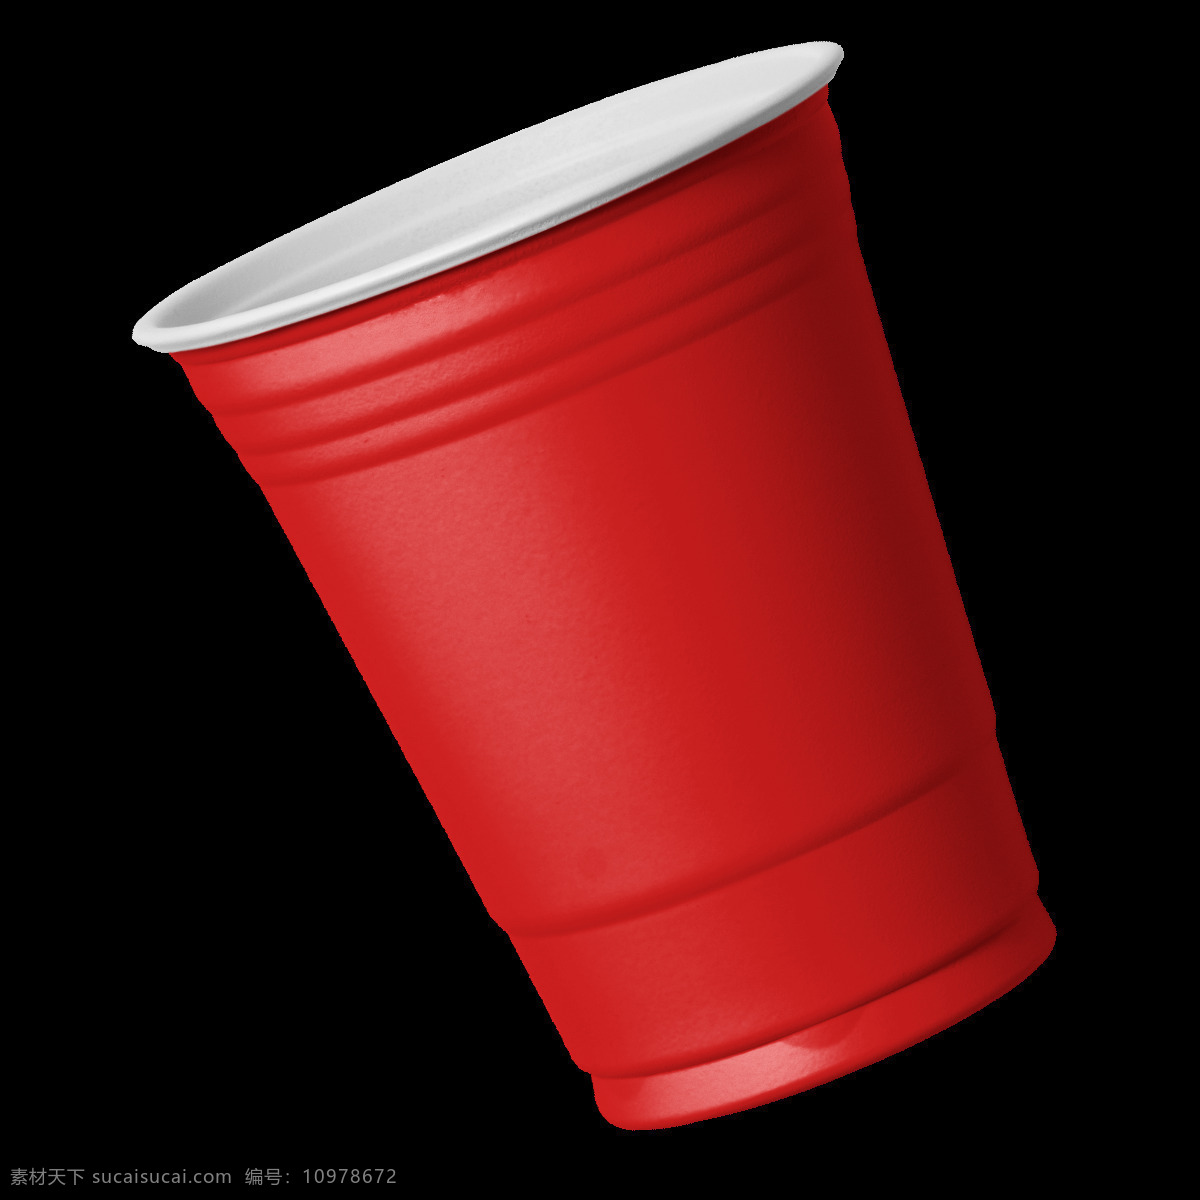 红色 塑料 杯子 元素 餐具 茶杯